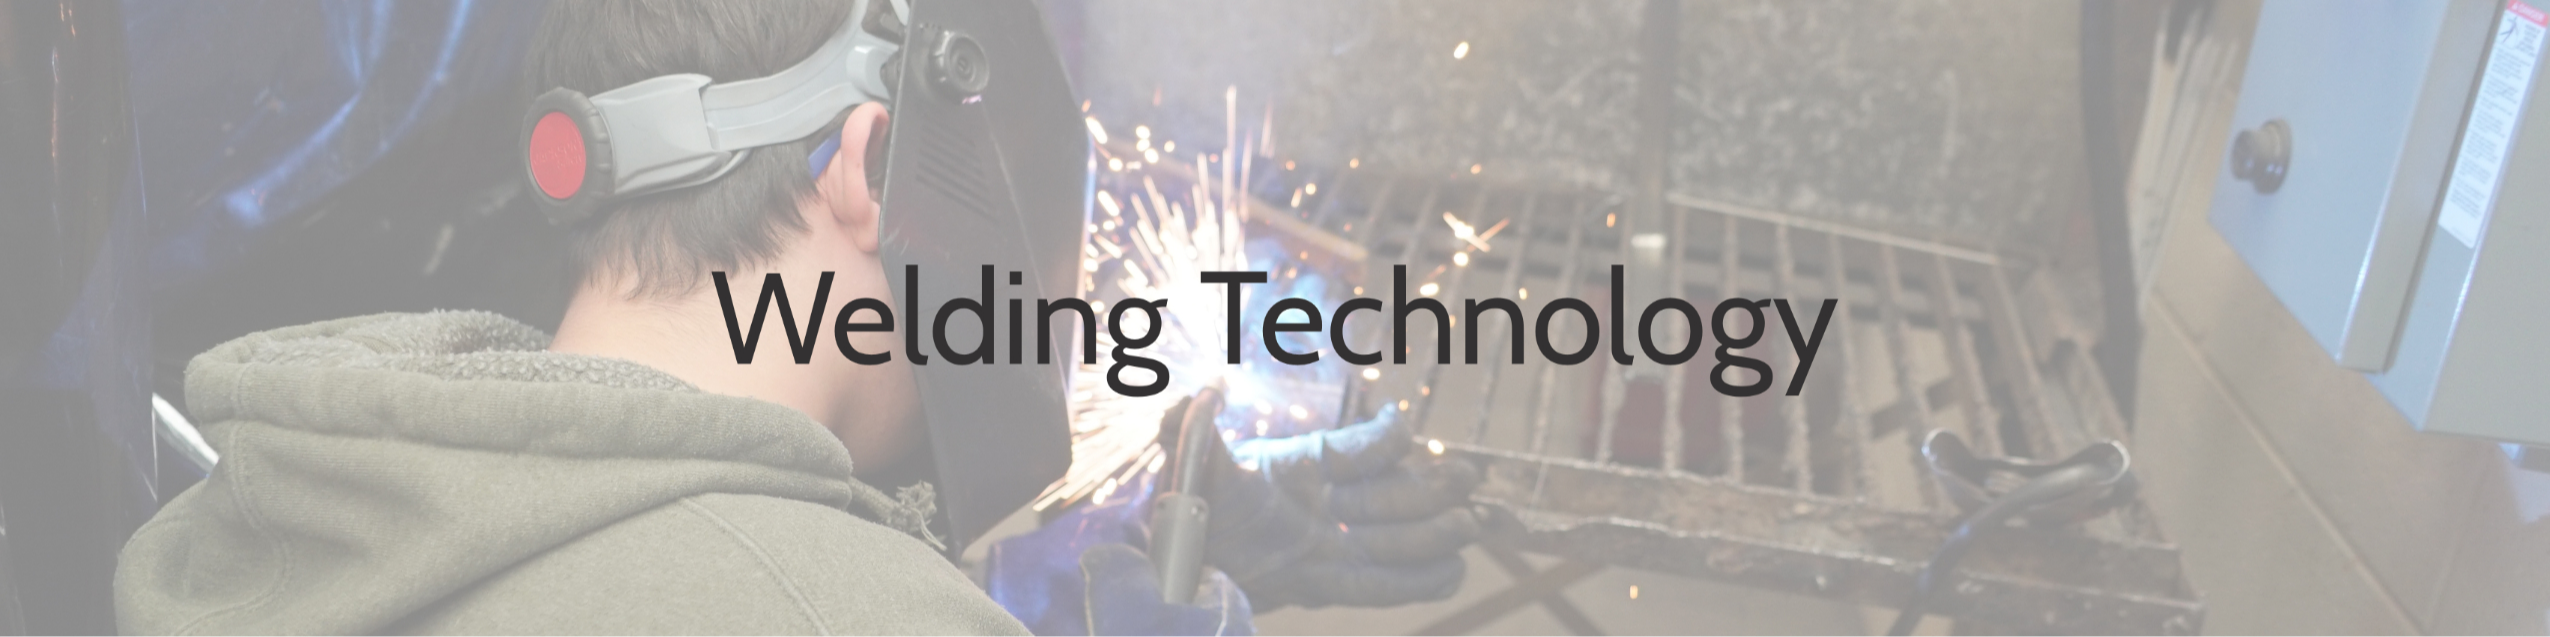 Welding Technology header